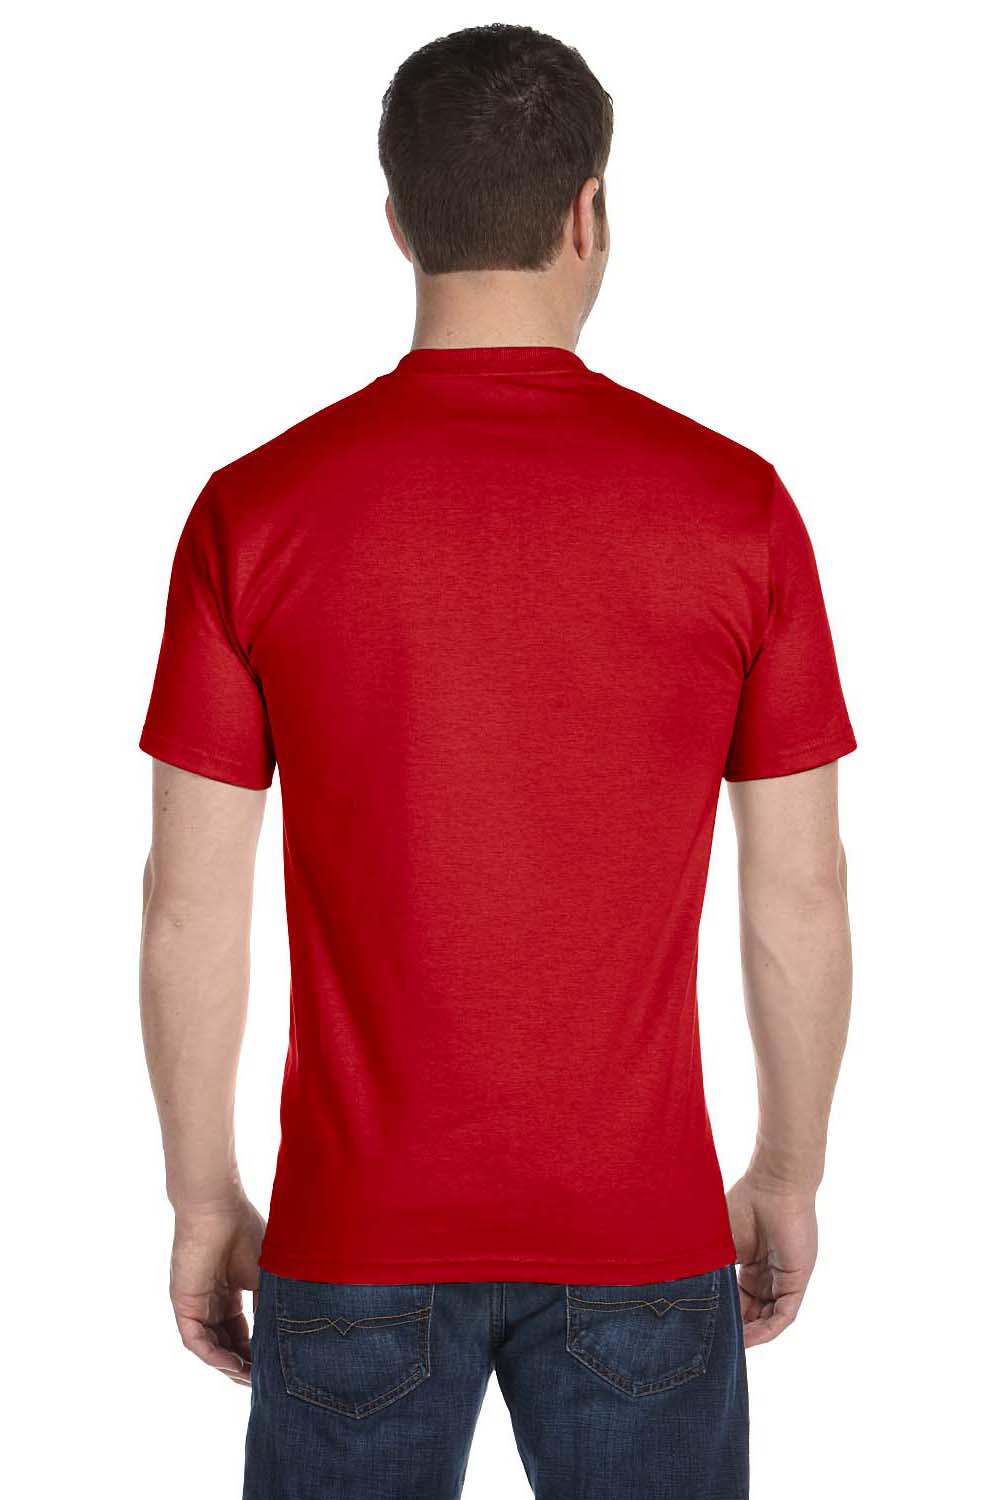 Gildan G800 Mens DryBlend Moisture Wicking Short Sleeve Crewneck T-Shirt Red Back